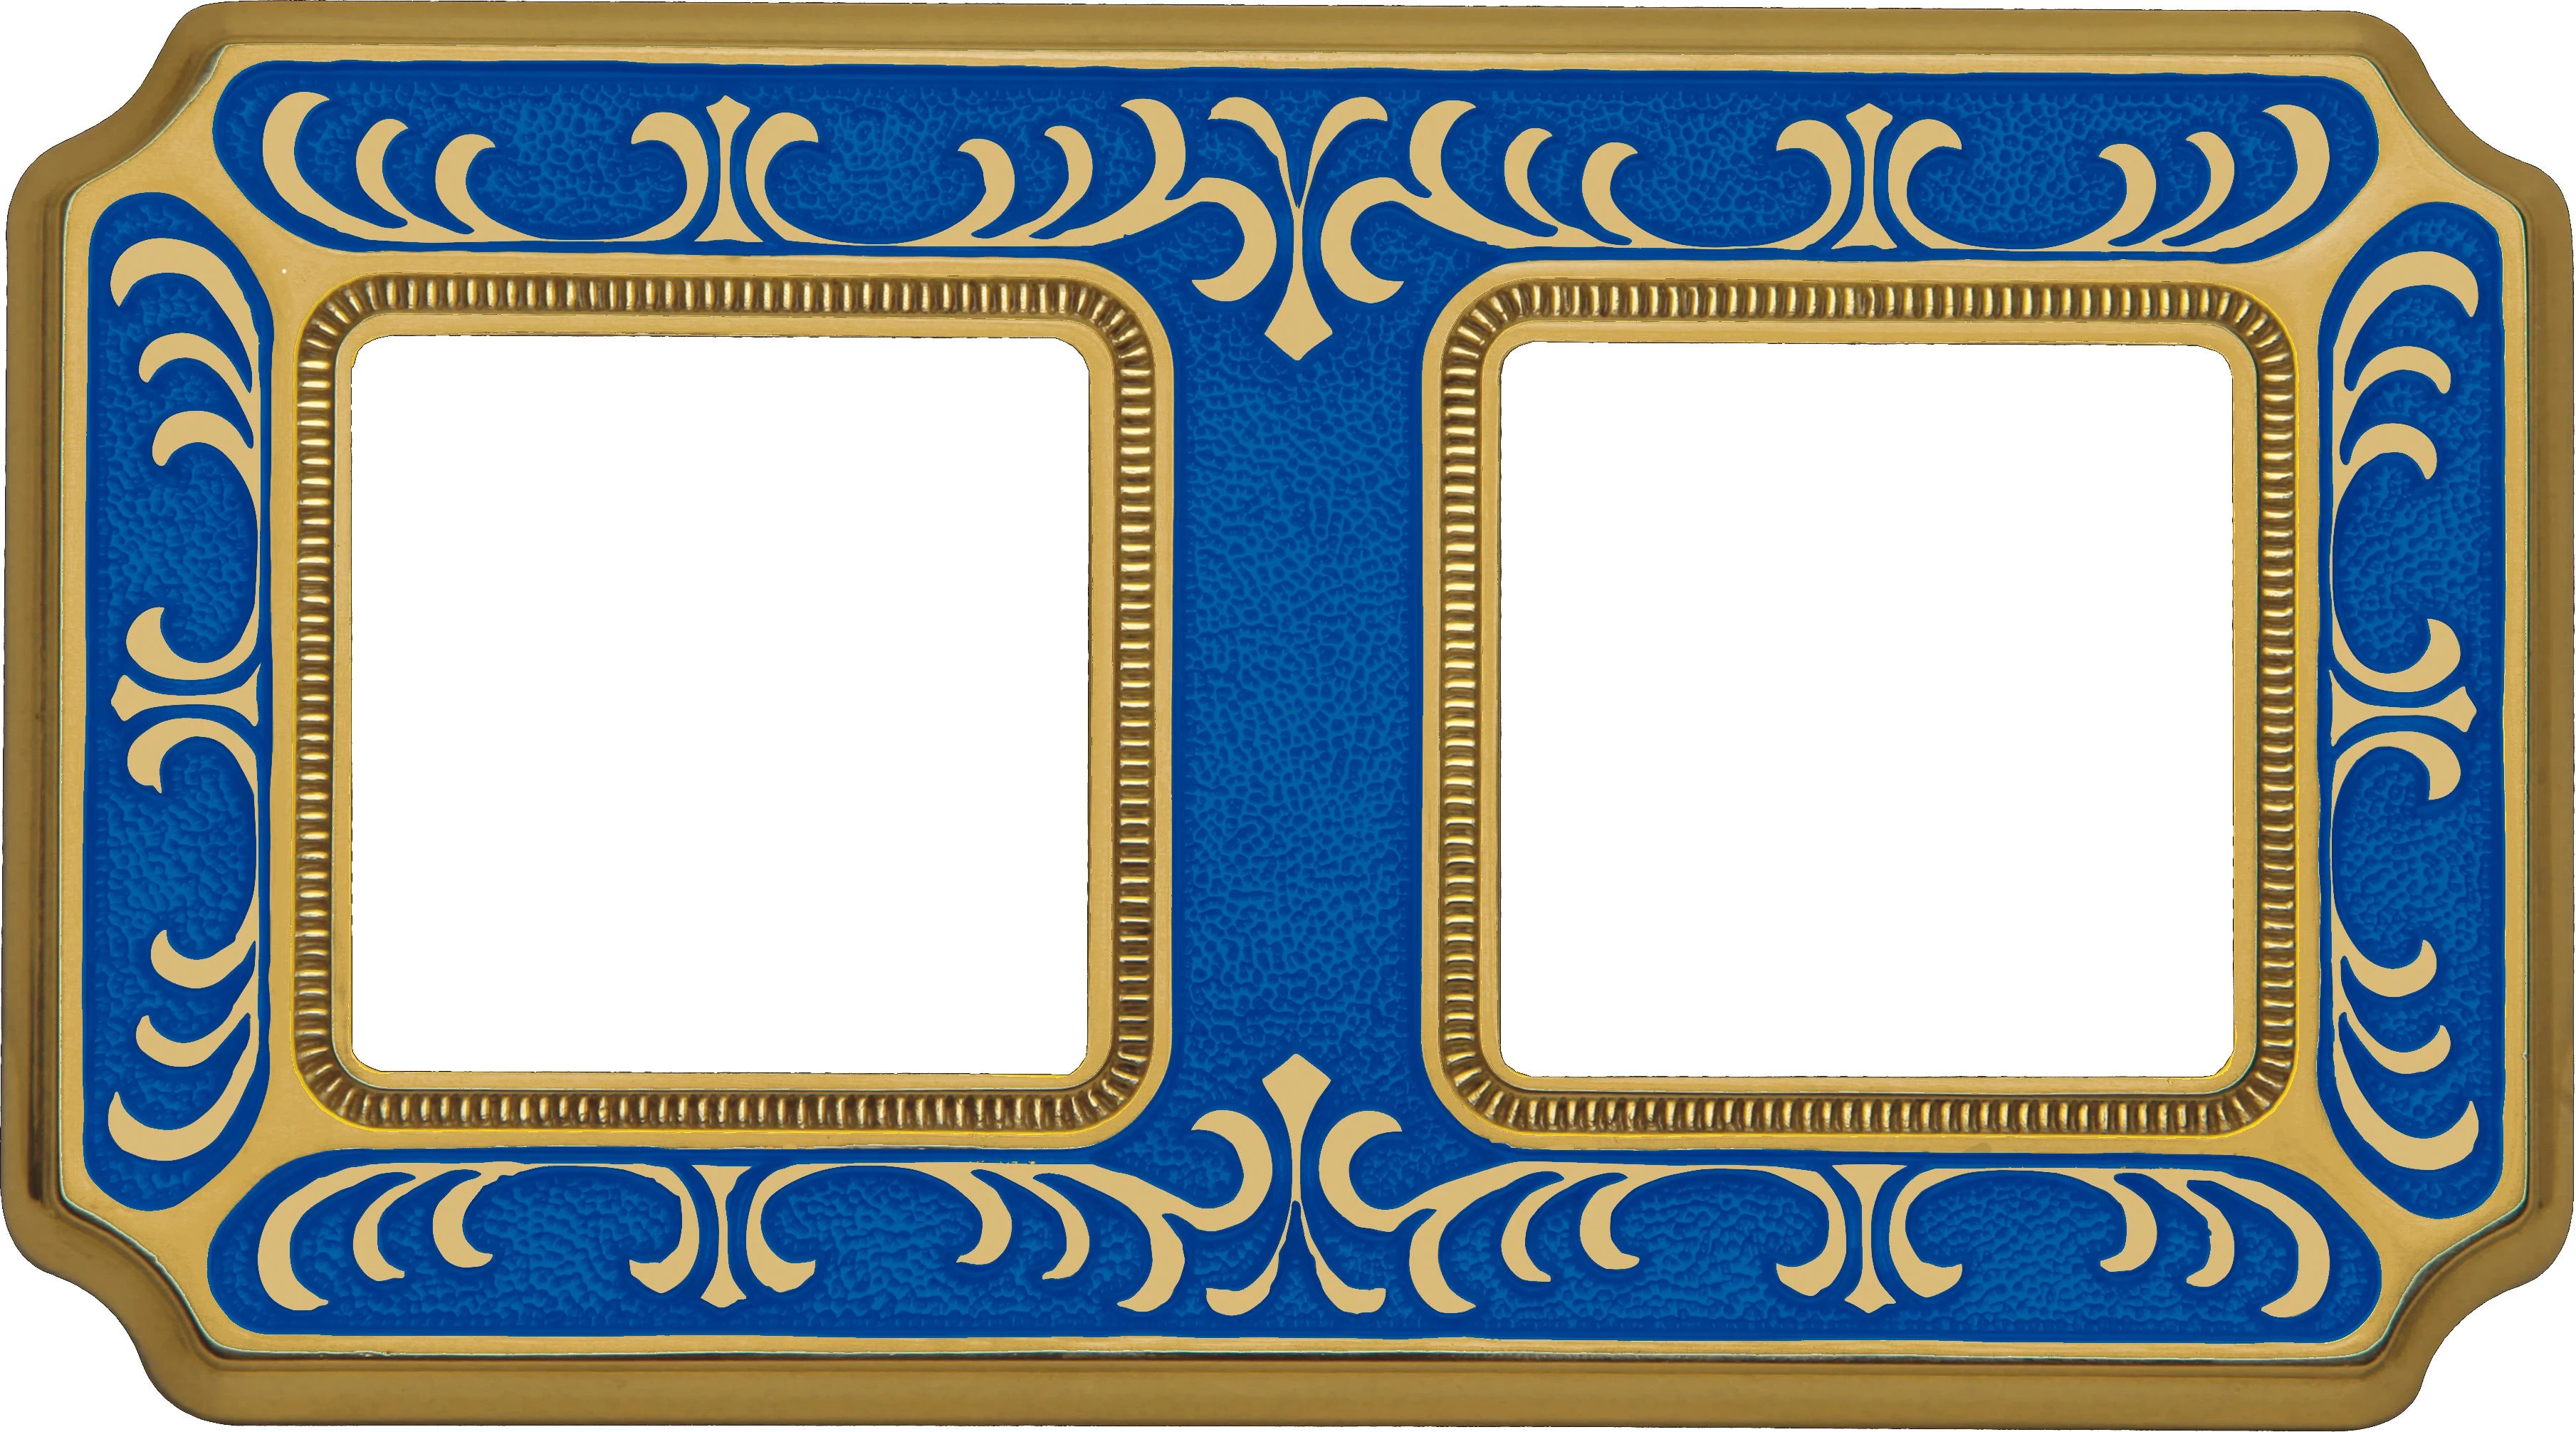  артикул FD01352AZEN название Рамка двойная, цвет Голубой сапфир, Siena, Fede